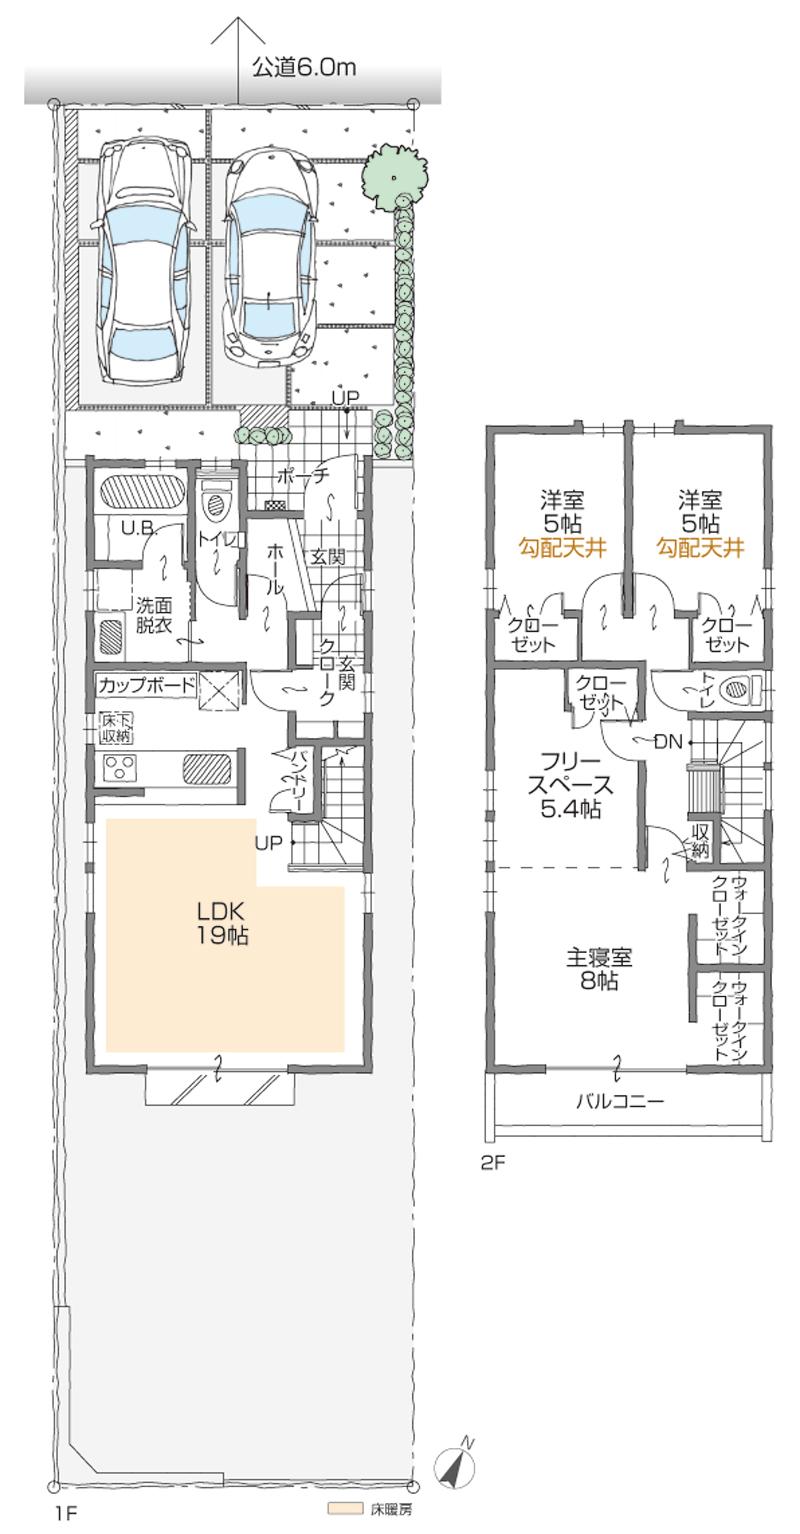 Floor plan. (A Building), Price 37,900,000 yen, 3LDK+3S, Land area 160.45 sq m , Building area 110.25 sq m